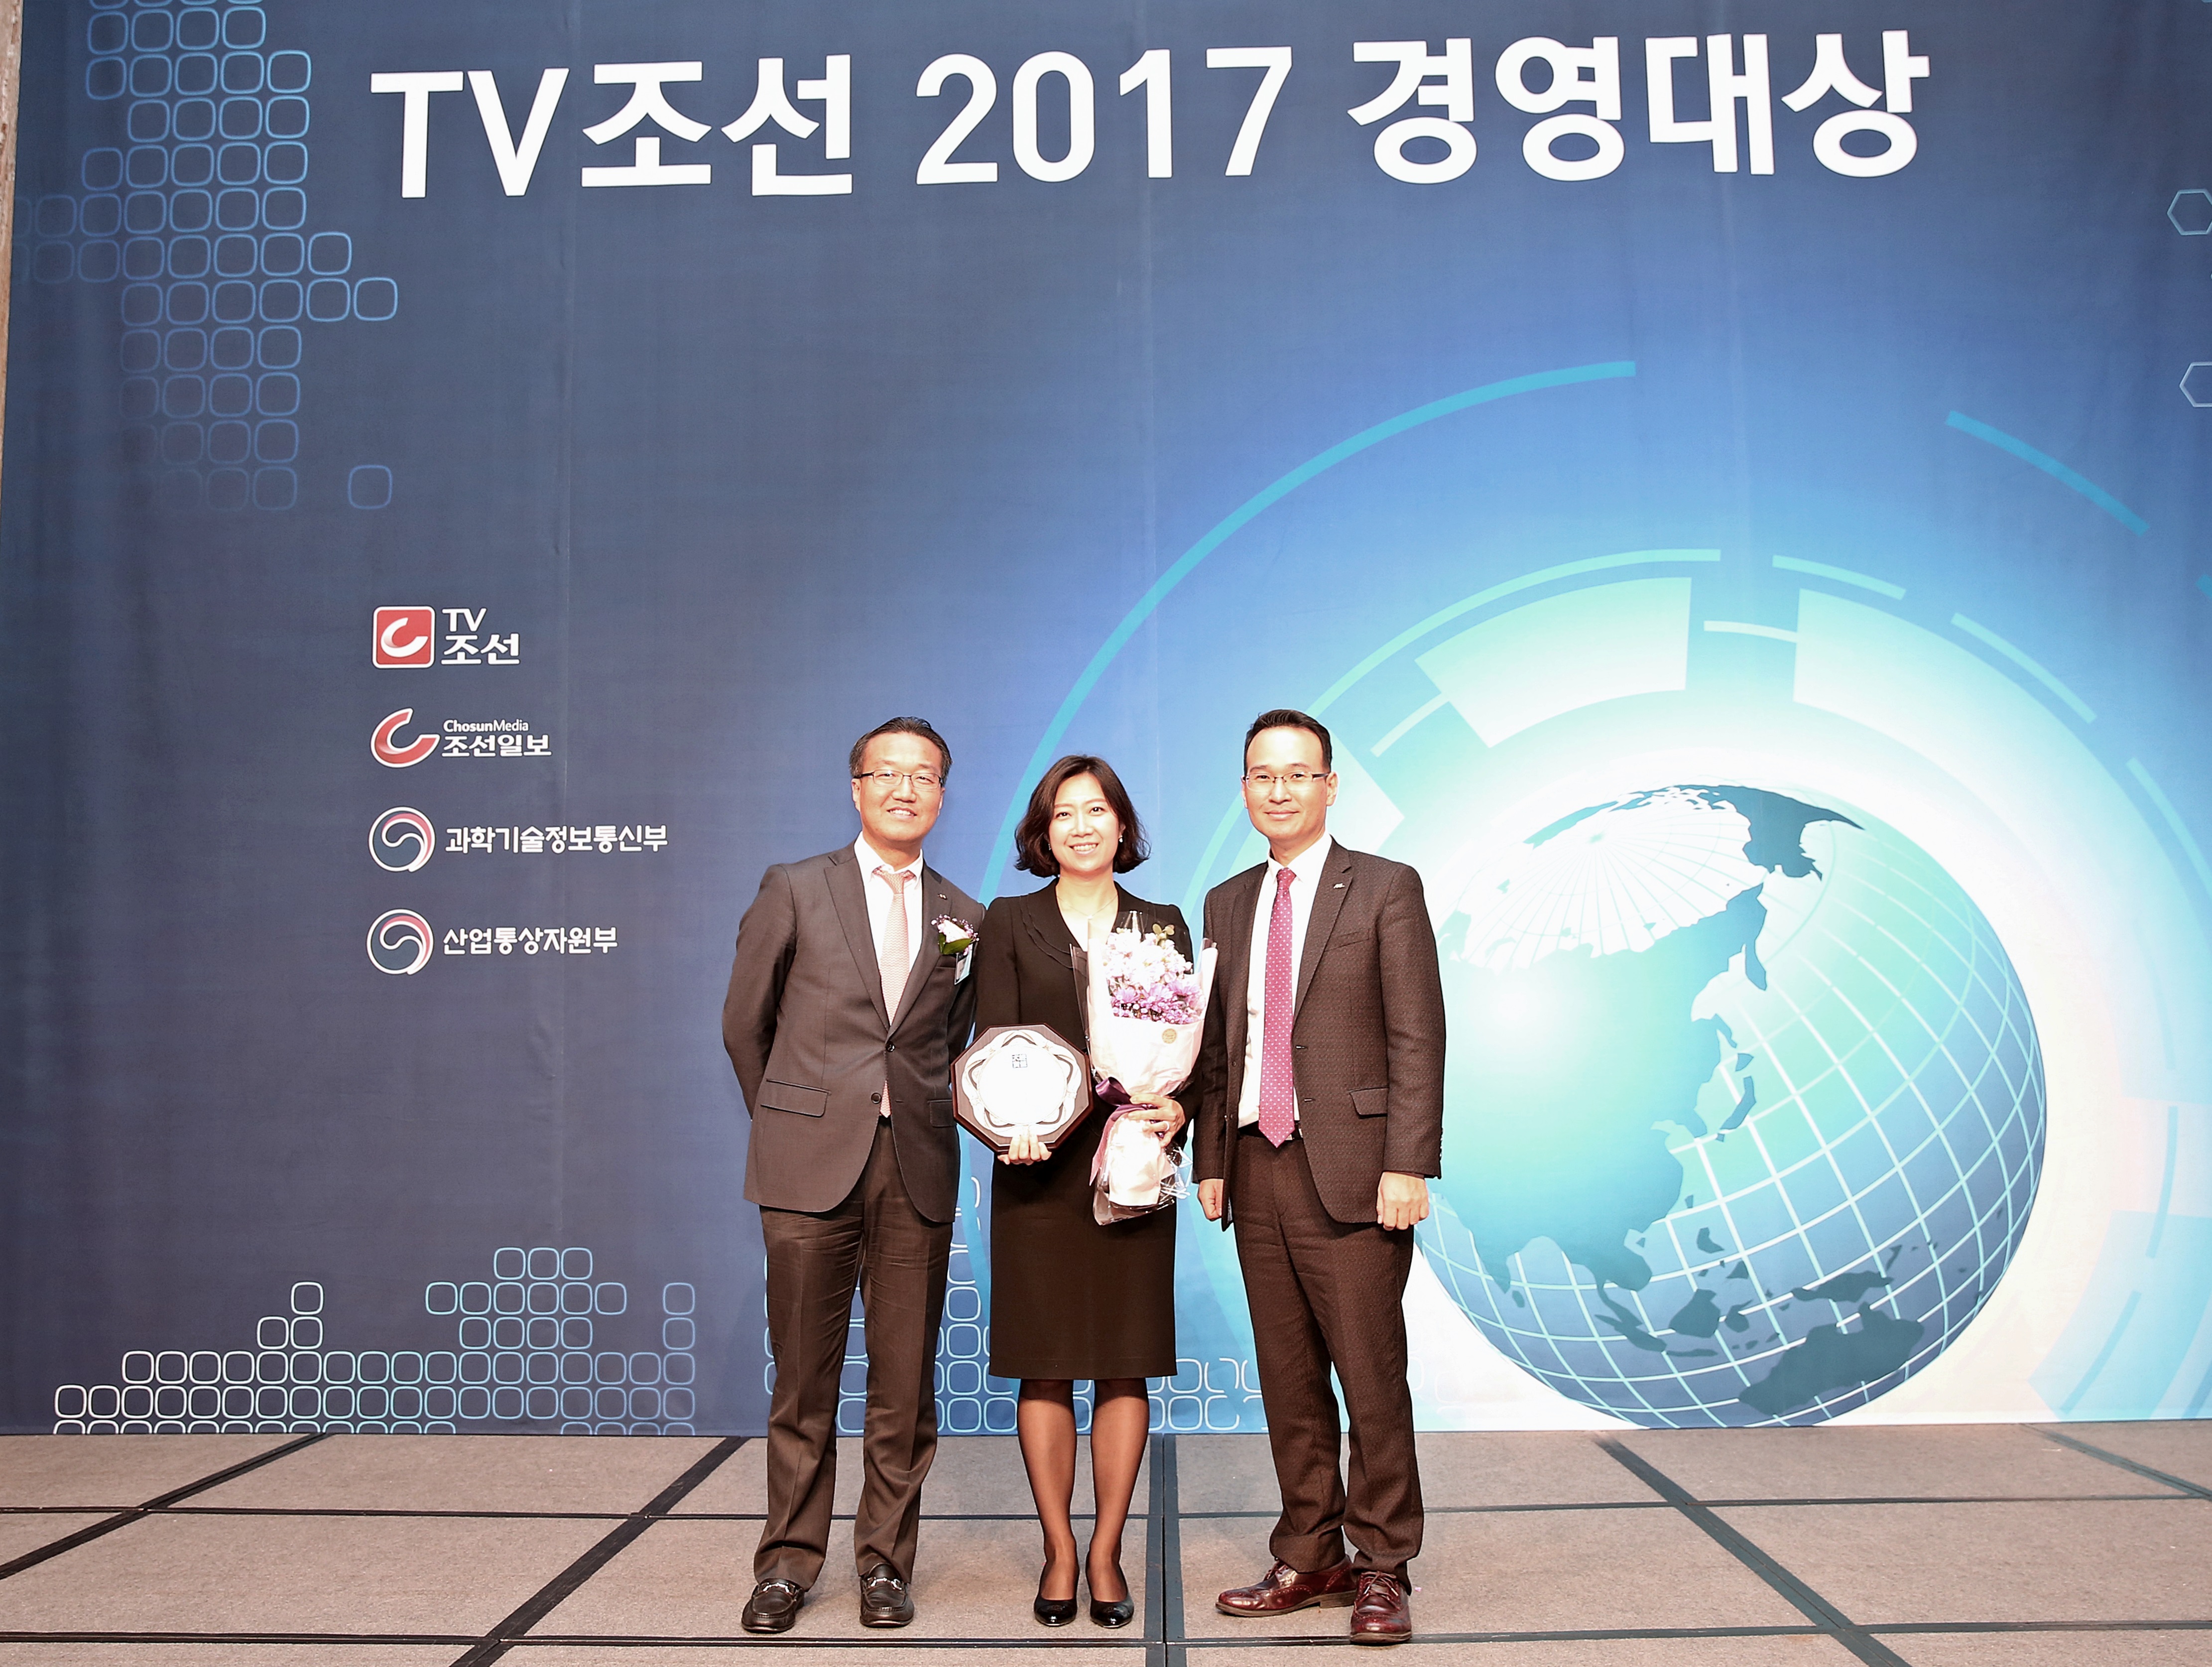 제4회 2017 TV조선 경영대상’에서 사회공헌 나눔경영 부문 대상을 수상하여
 기념사진을 찍고 있는 모습의 사진